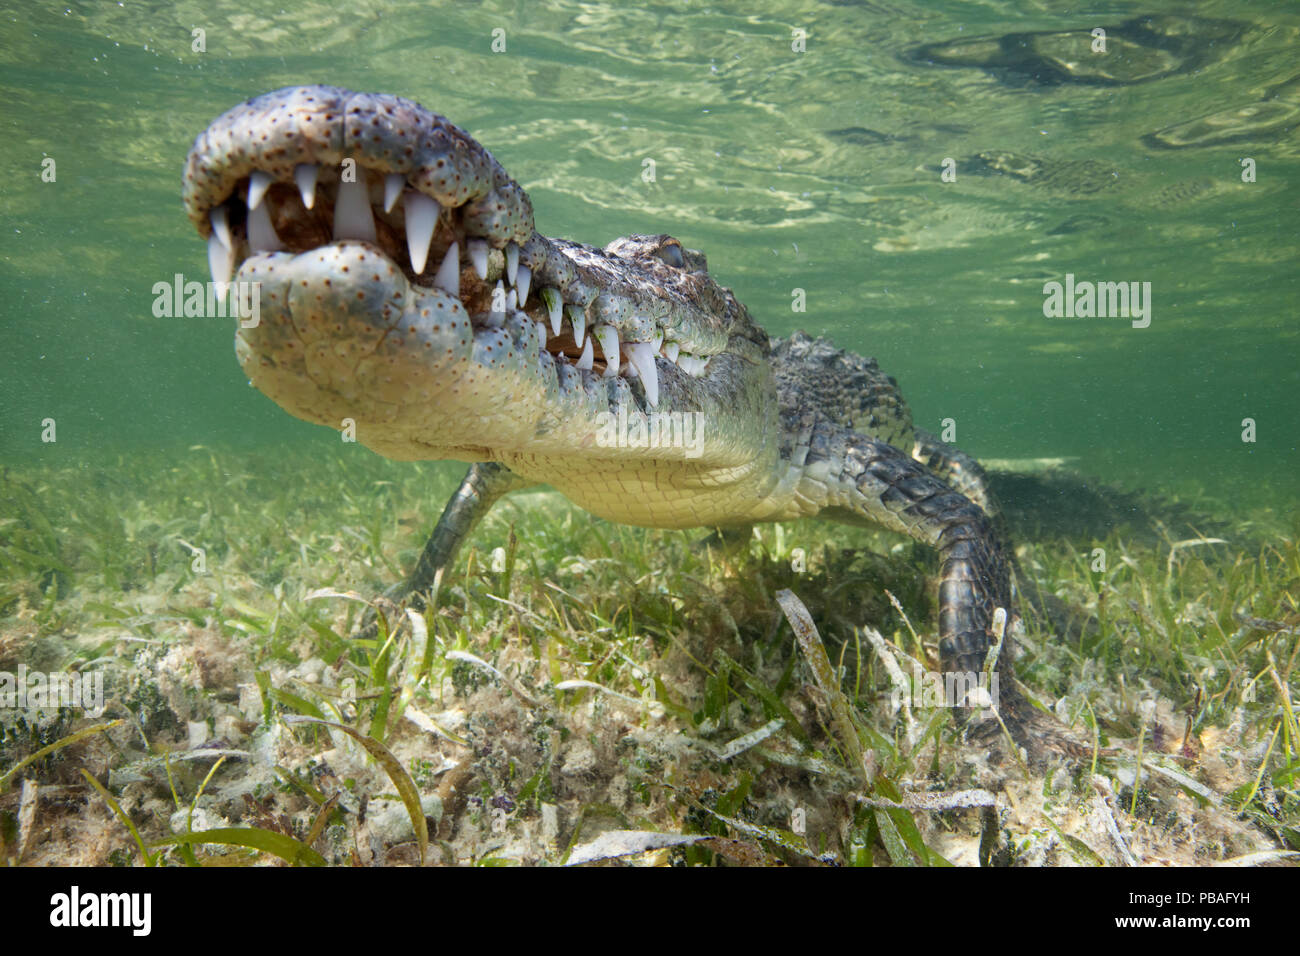 El Cocodrilo Americano (Crocodylus acutus) descansa justo encima de algas submarinas, la Reserva de la Biosfera Banco Chinchorro, El Caribe, México Foto de stock